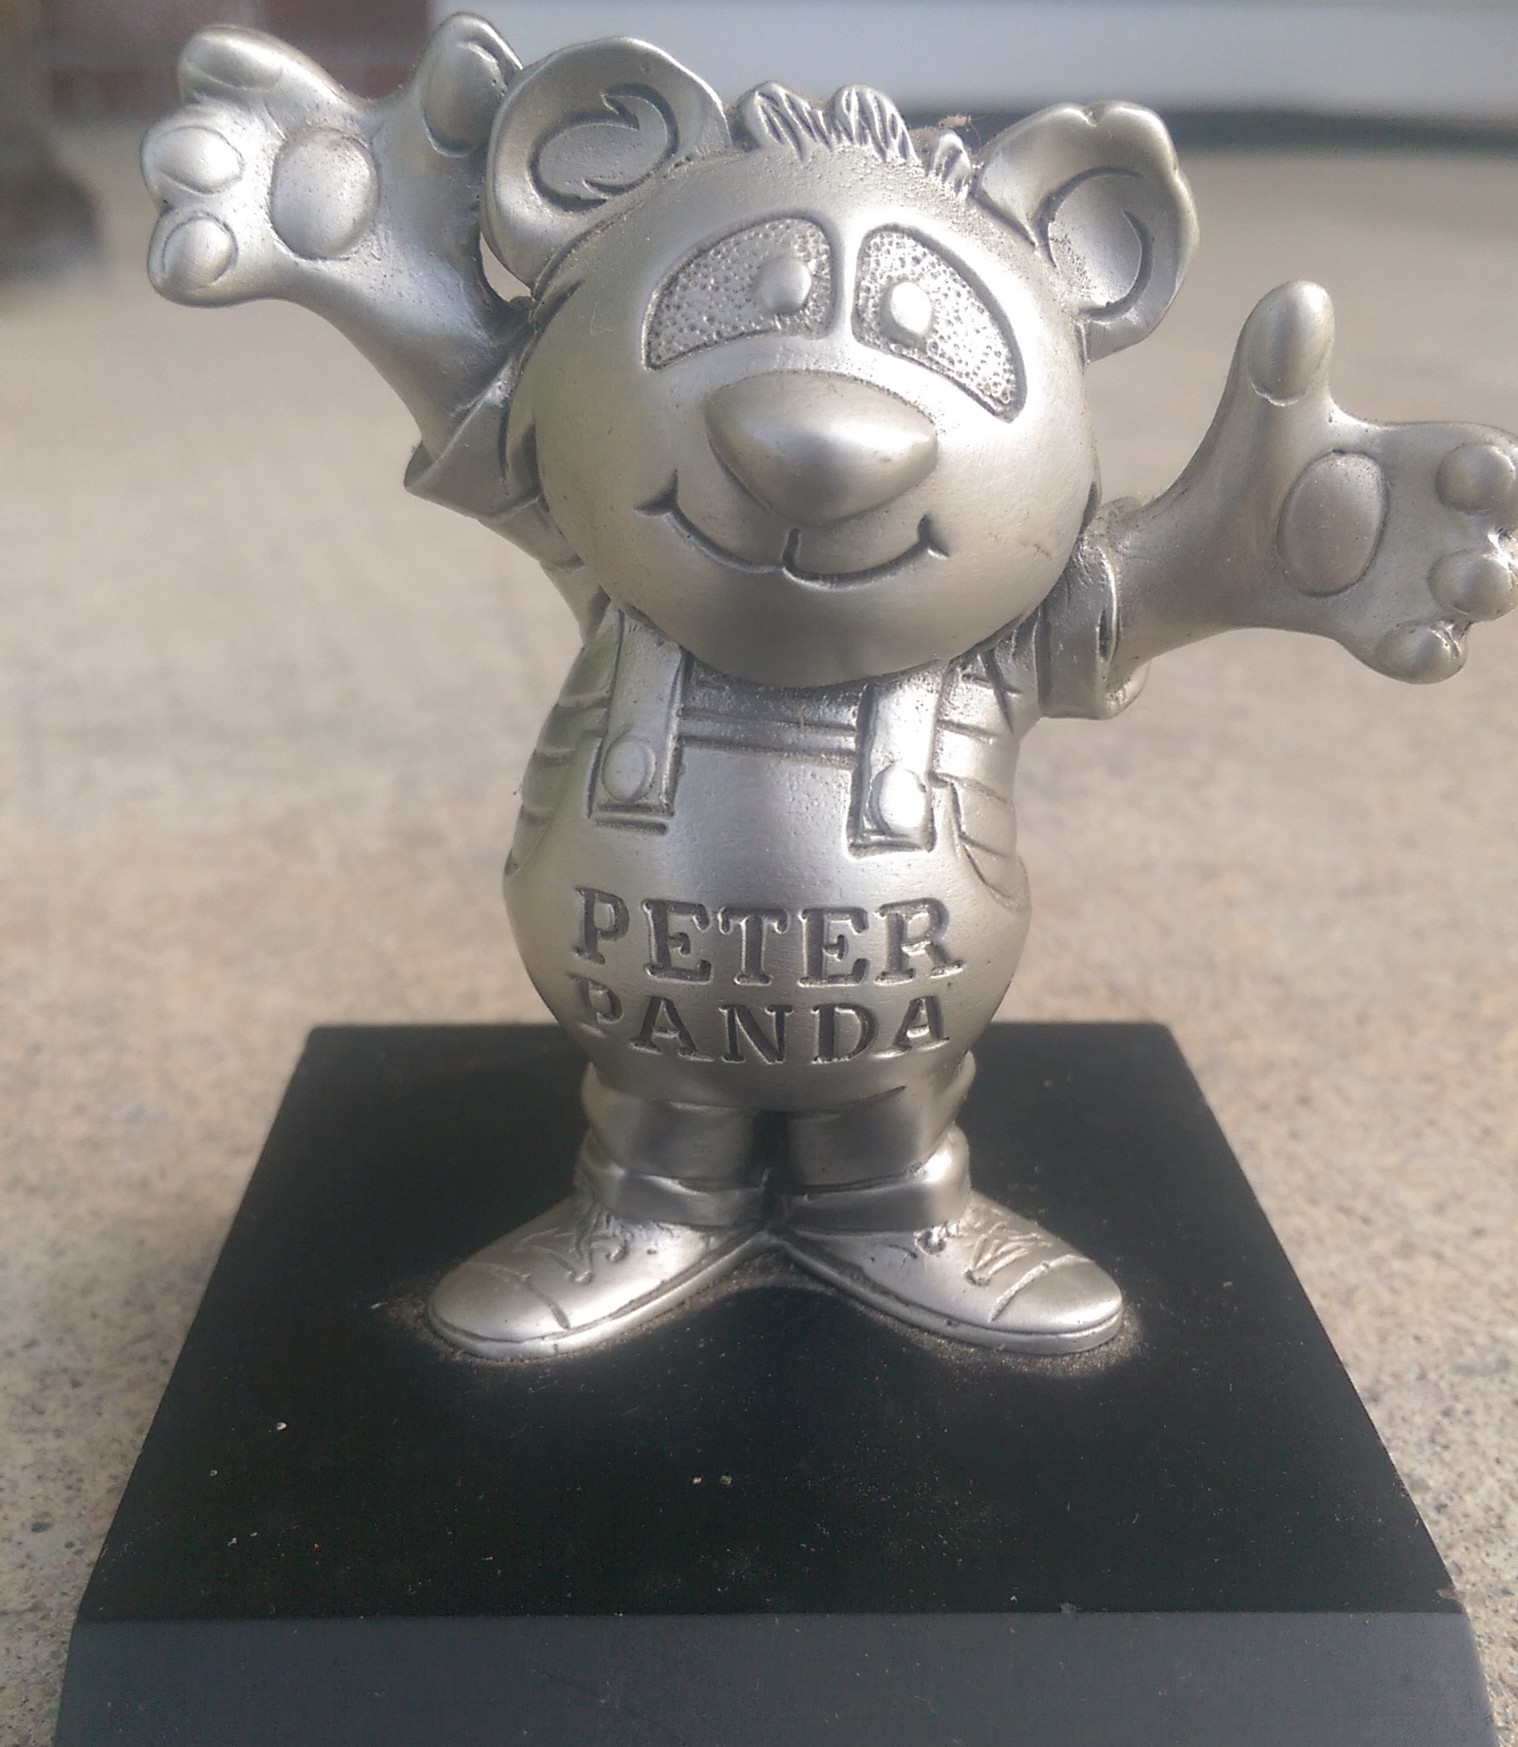 Peter Panda 3-D statue close-up